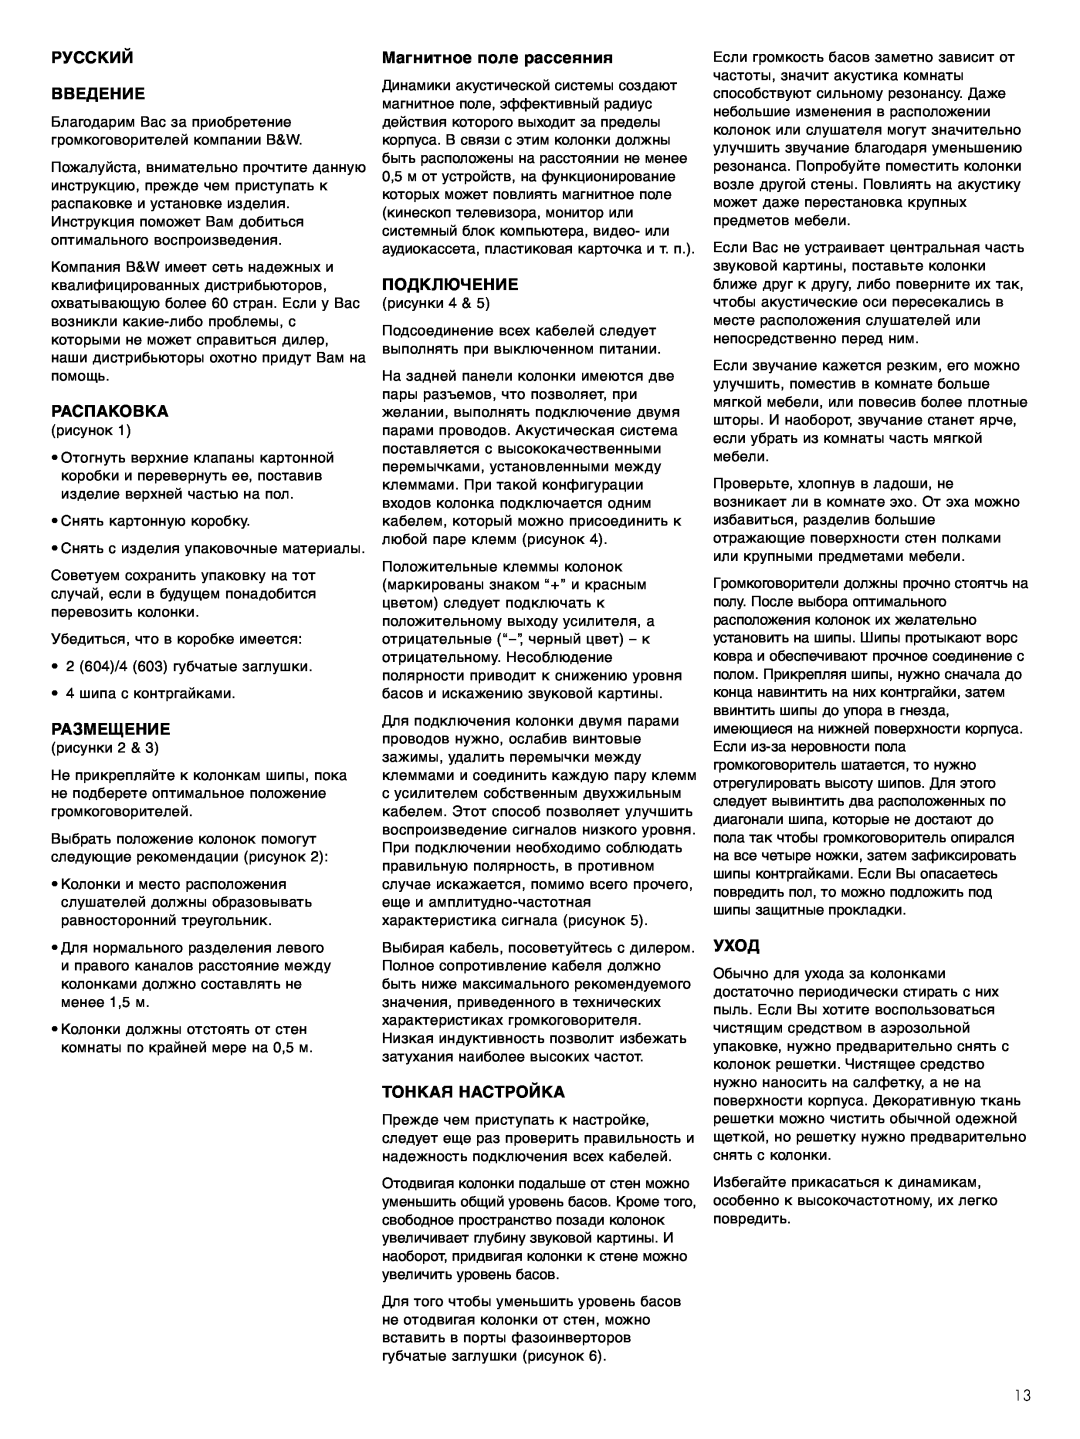 Bowers & Wilkins 603 S2 Русский Введение, Распаковка, Размещение, Магнитное поле рассеяния, Подключение, Тонкая Настройка 